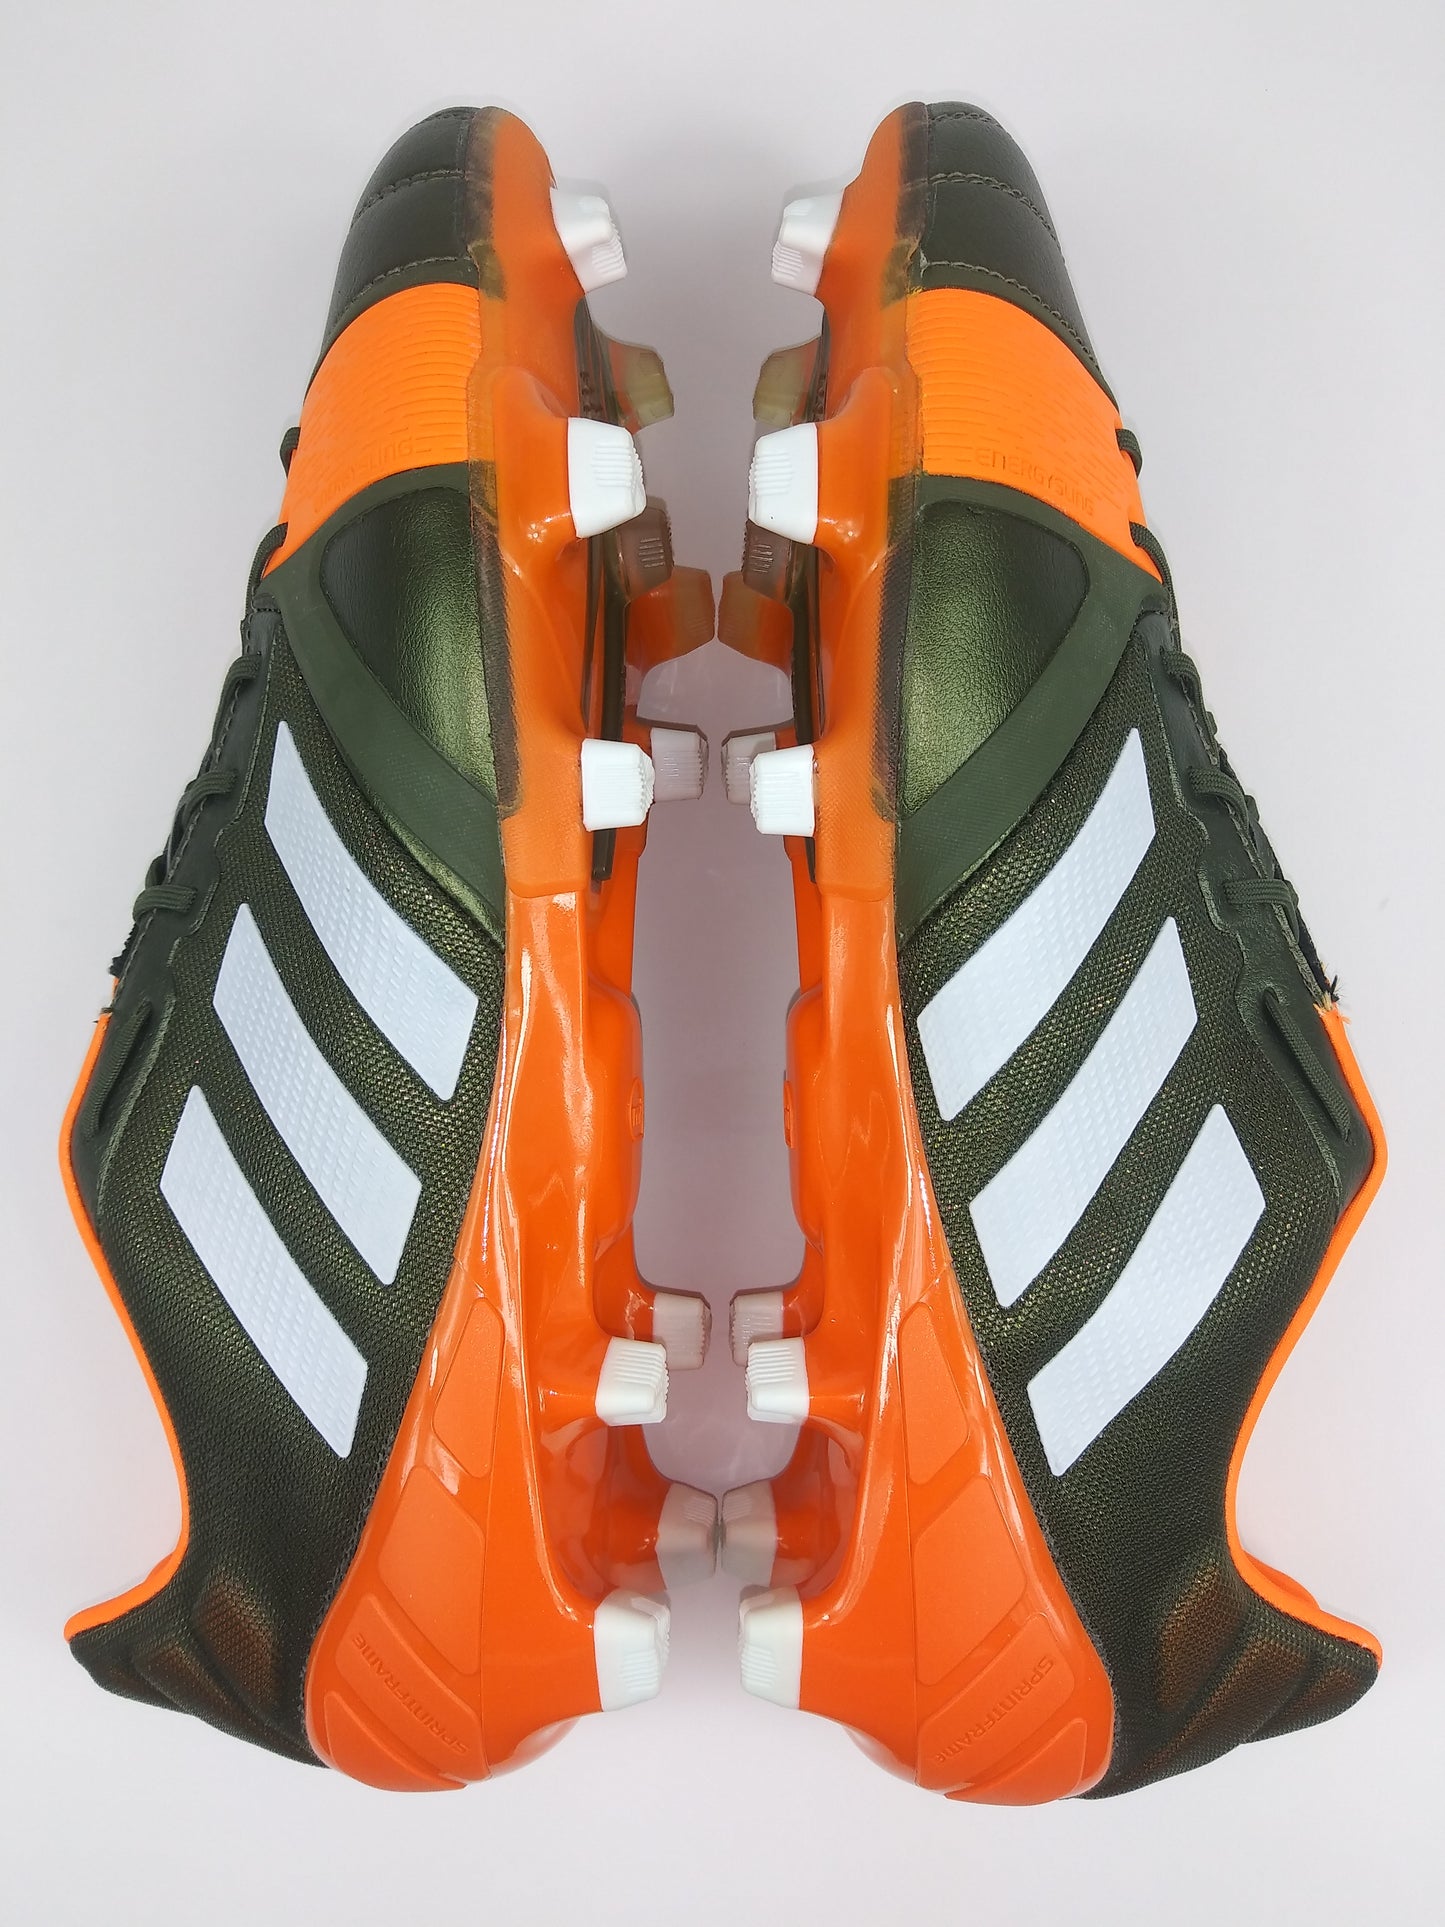 Adidas Nitrocharge 1.0 TRX FG Green Orange